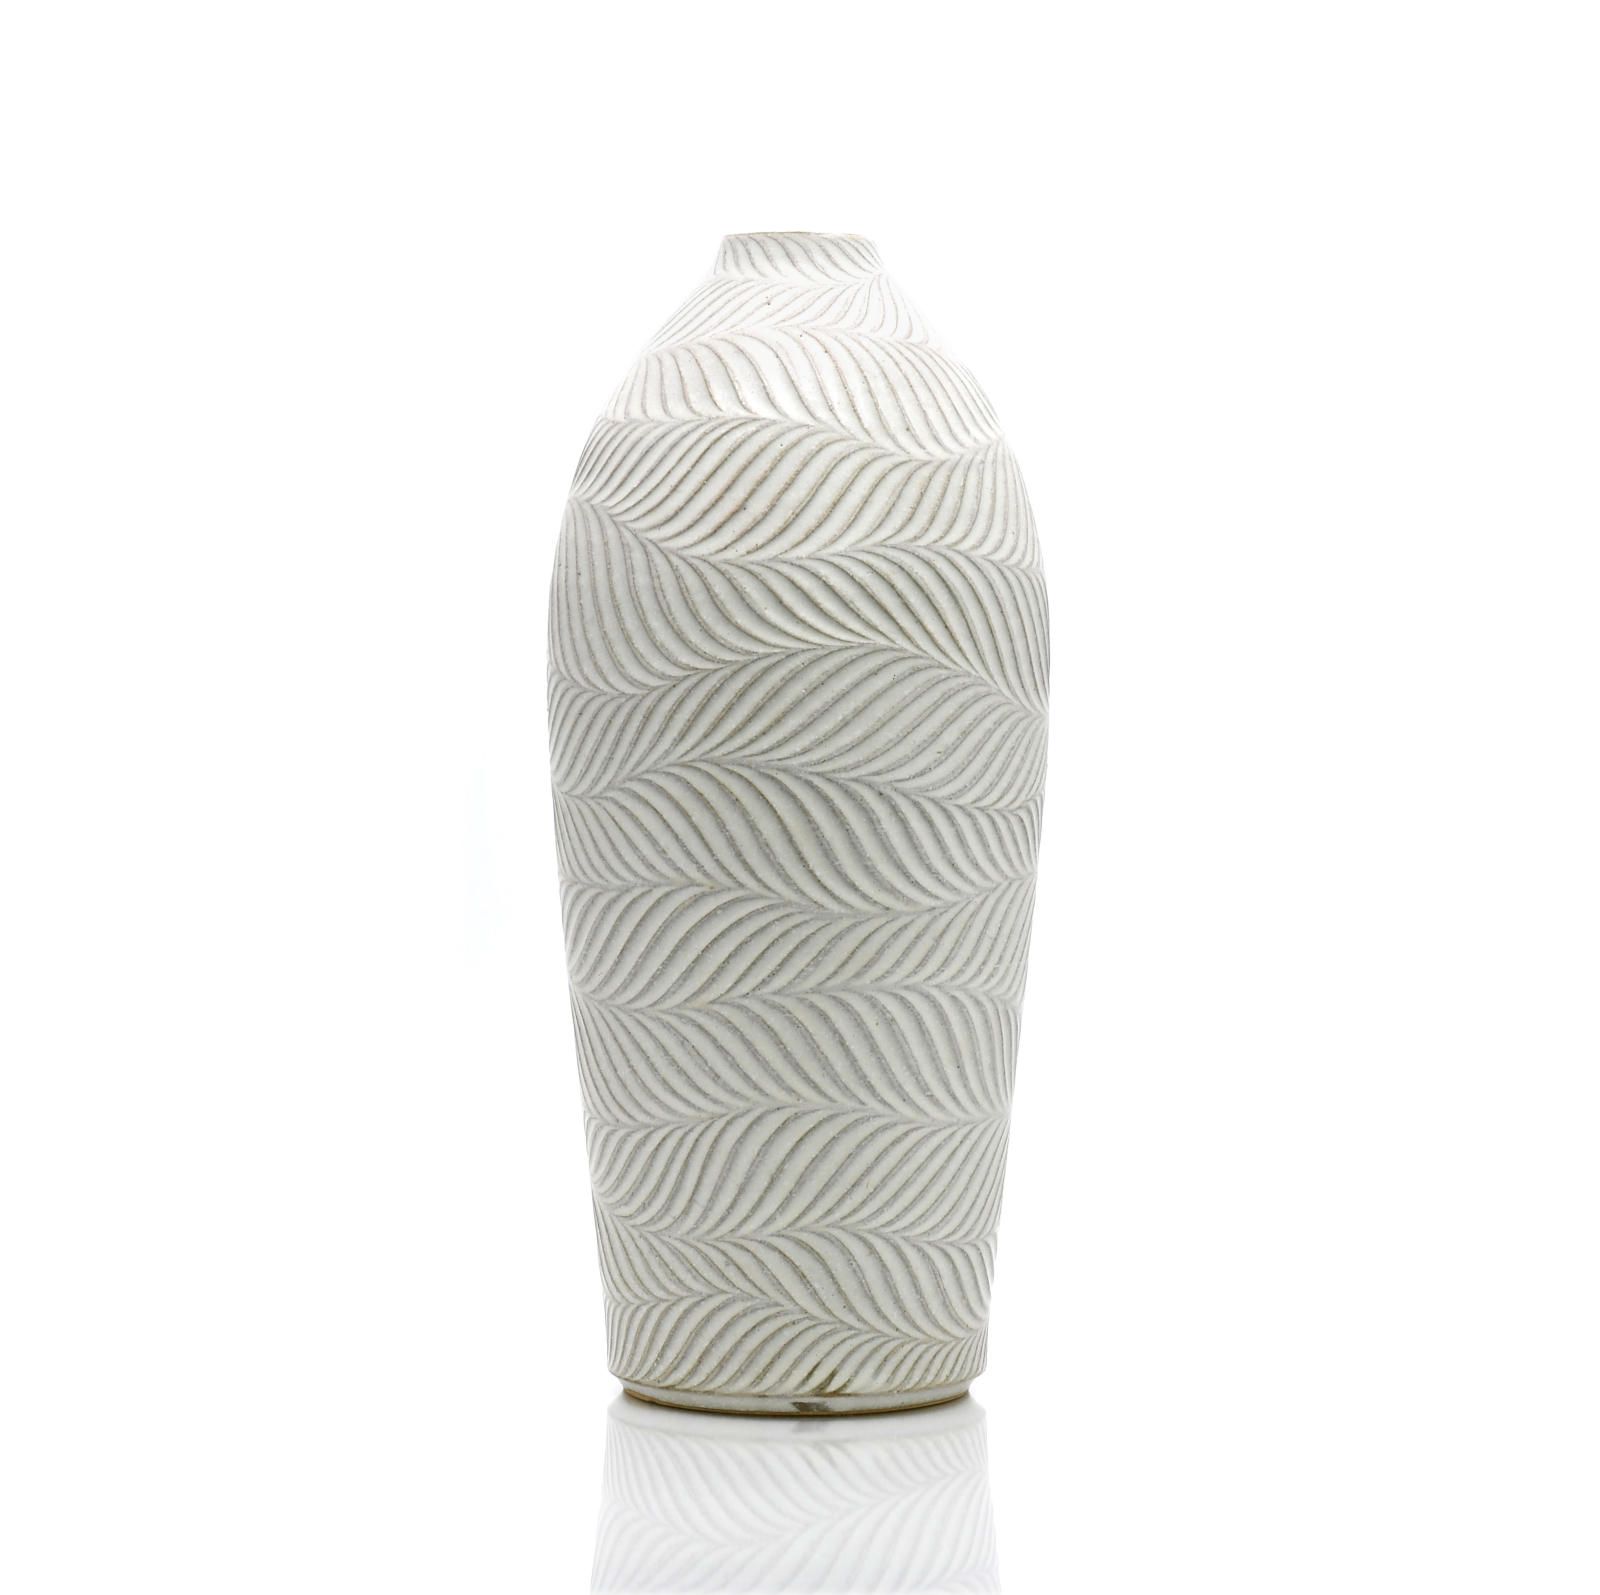 Shinogi vase by Shinpei Fukushima